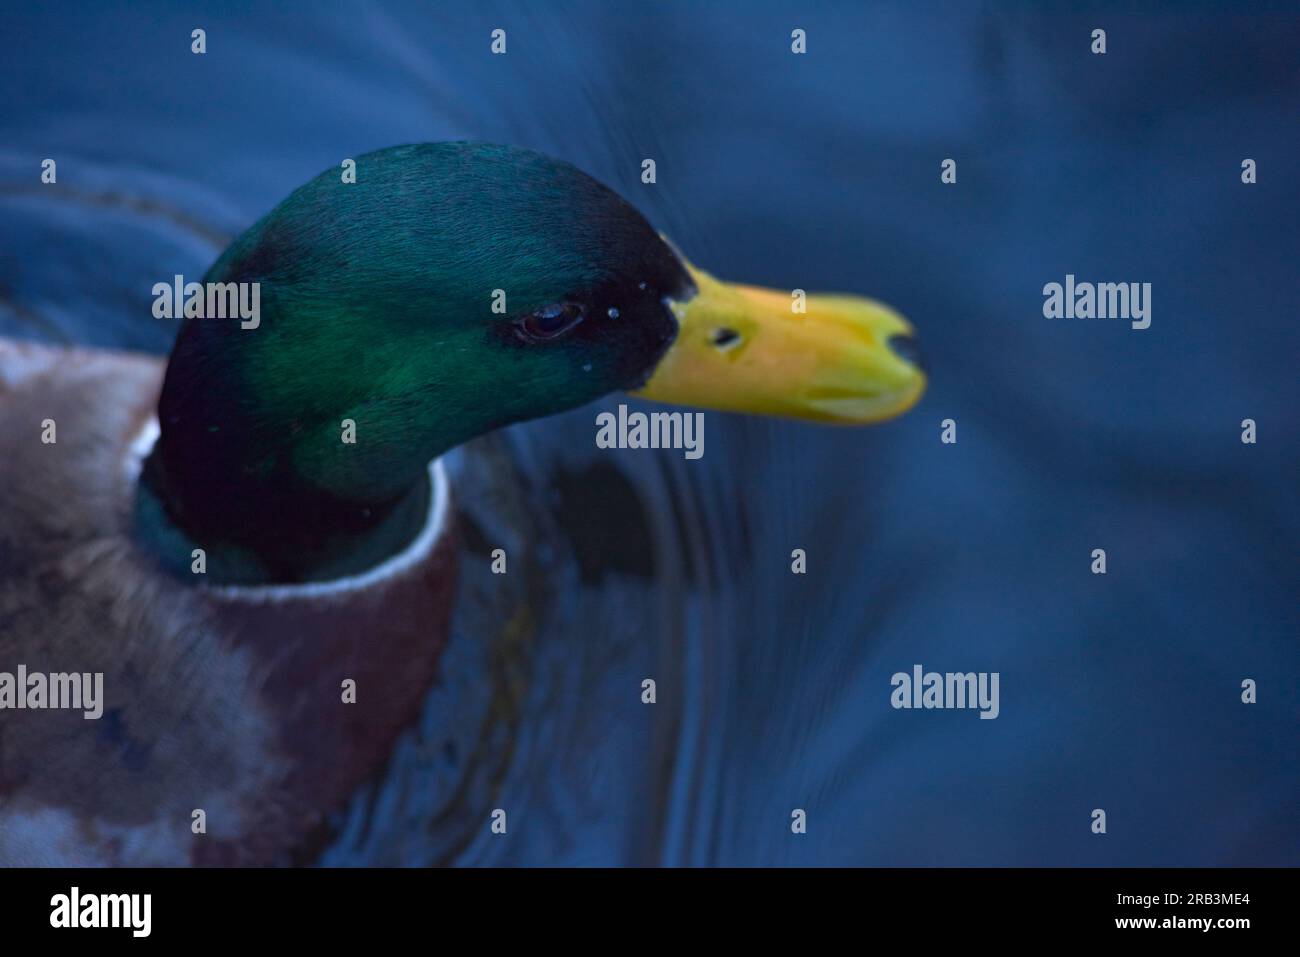 Nahaufnahme des Kopfes einer männlichen Ente mit grünem Kopf und gelbem Schnabel Stockfoto